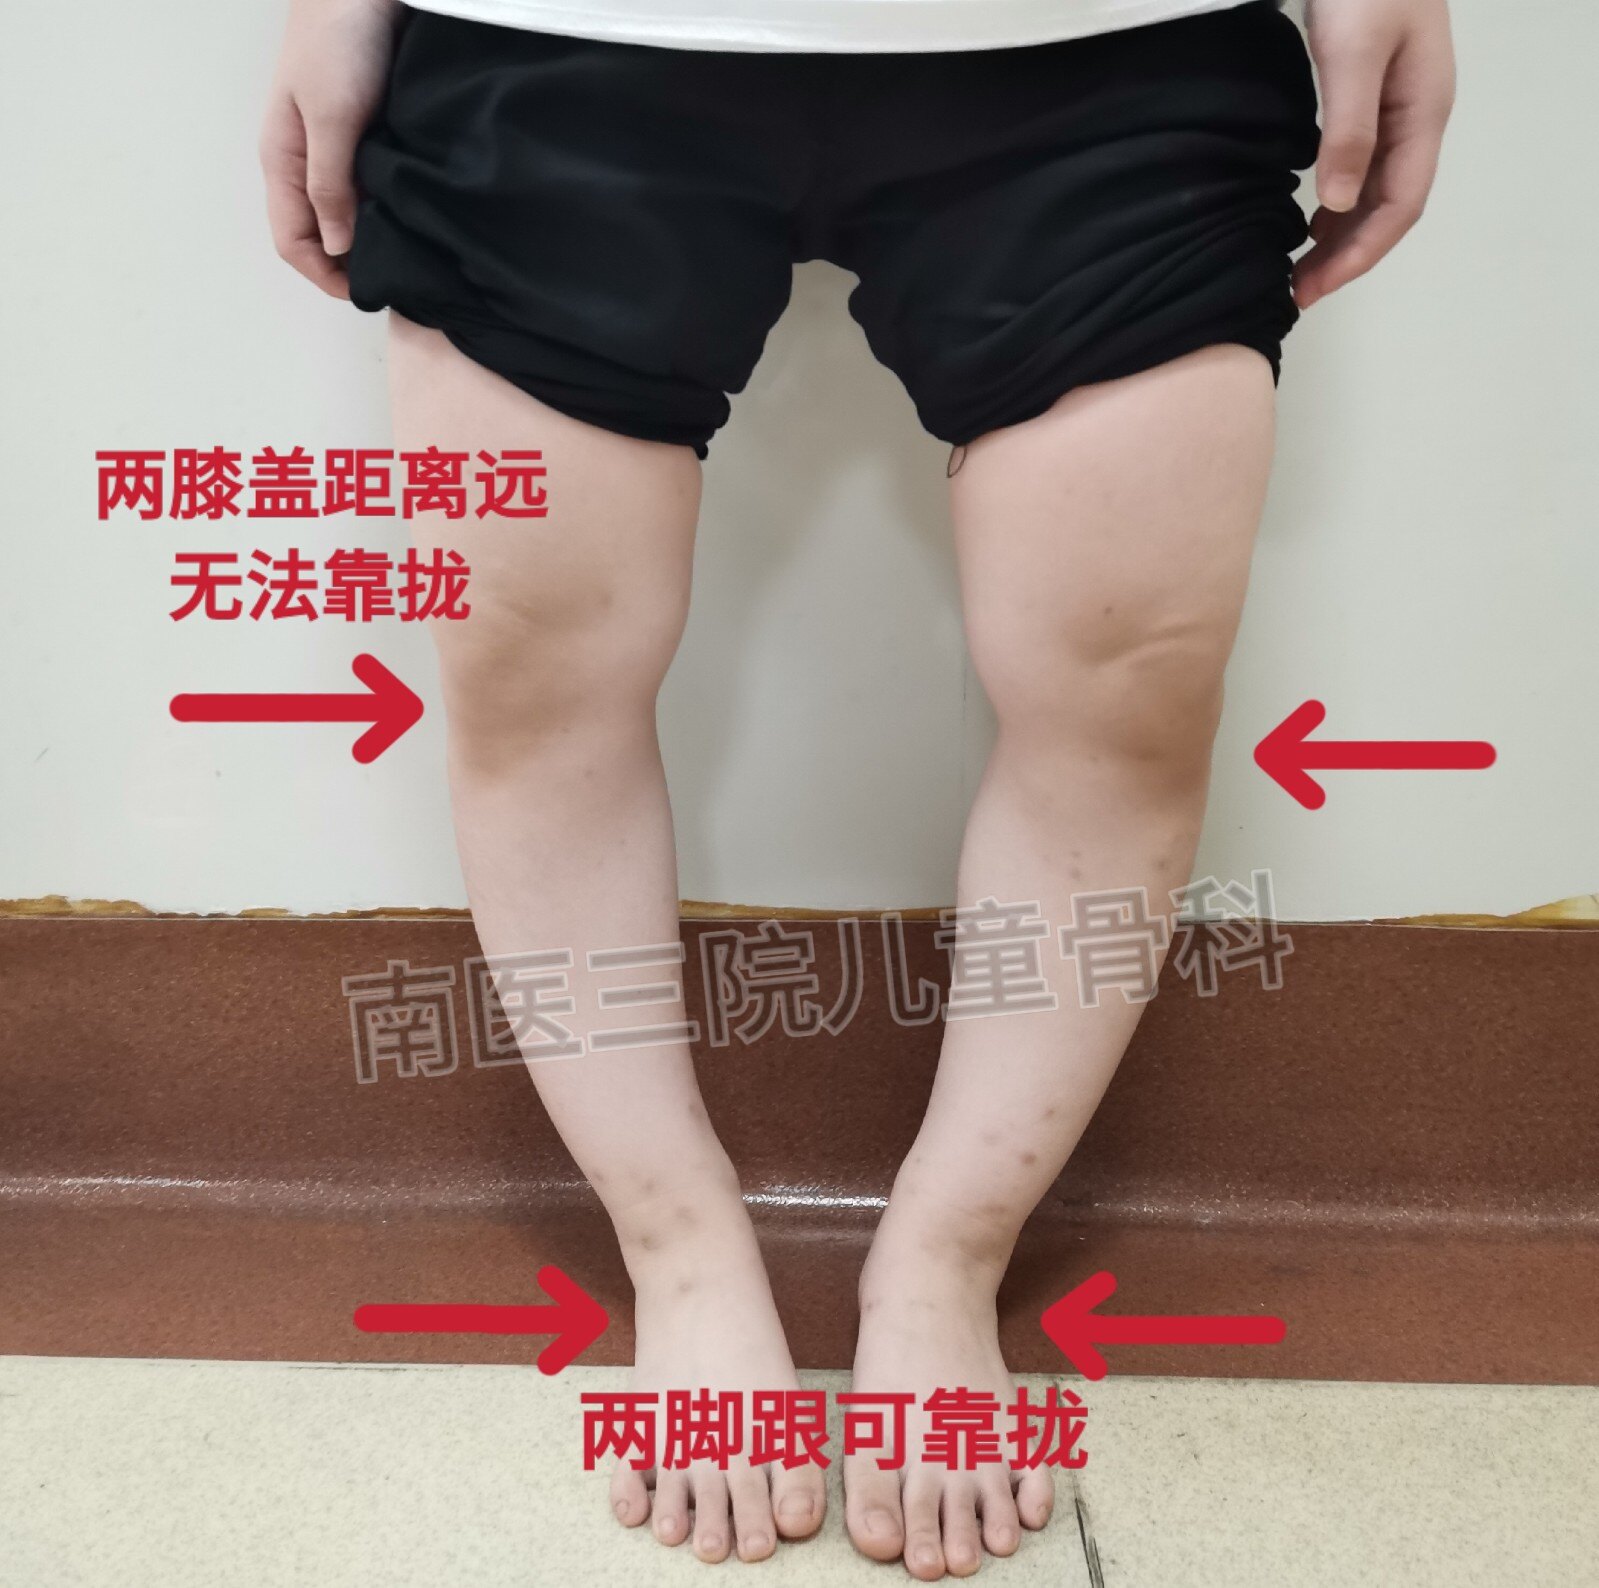 孩子腿变直变长≠佩戴铁架子，这种精准微创矫形技术了解一下|矫形|股骨|畸形|支架|-健康界